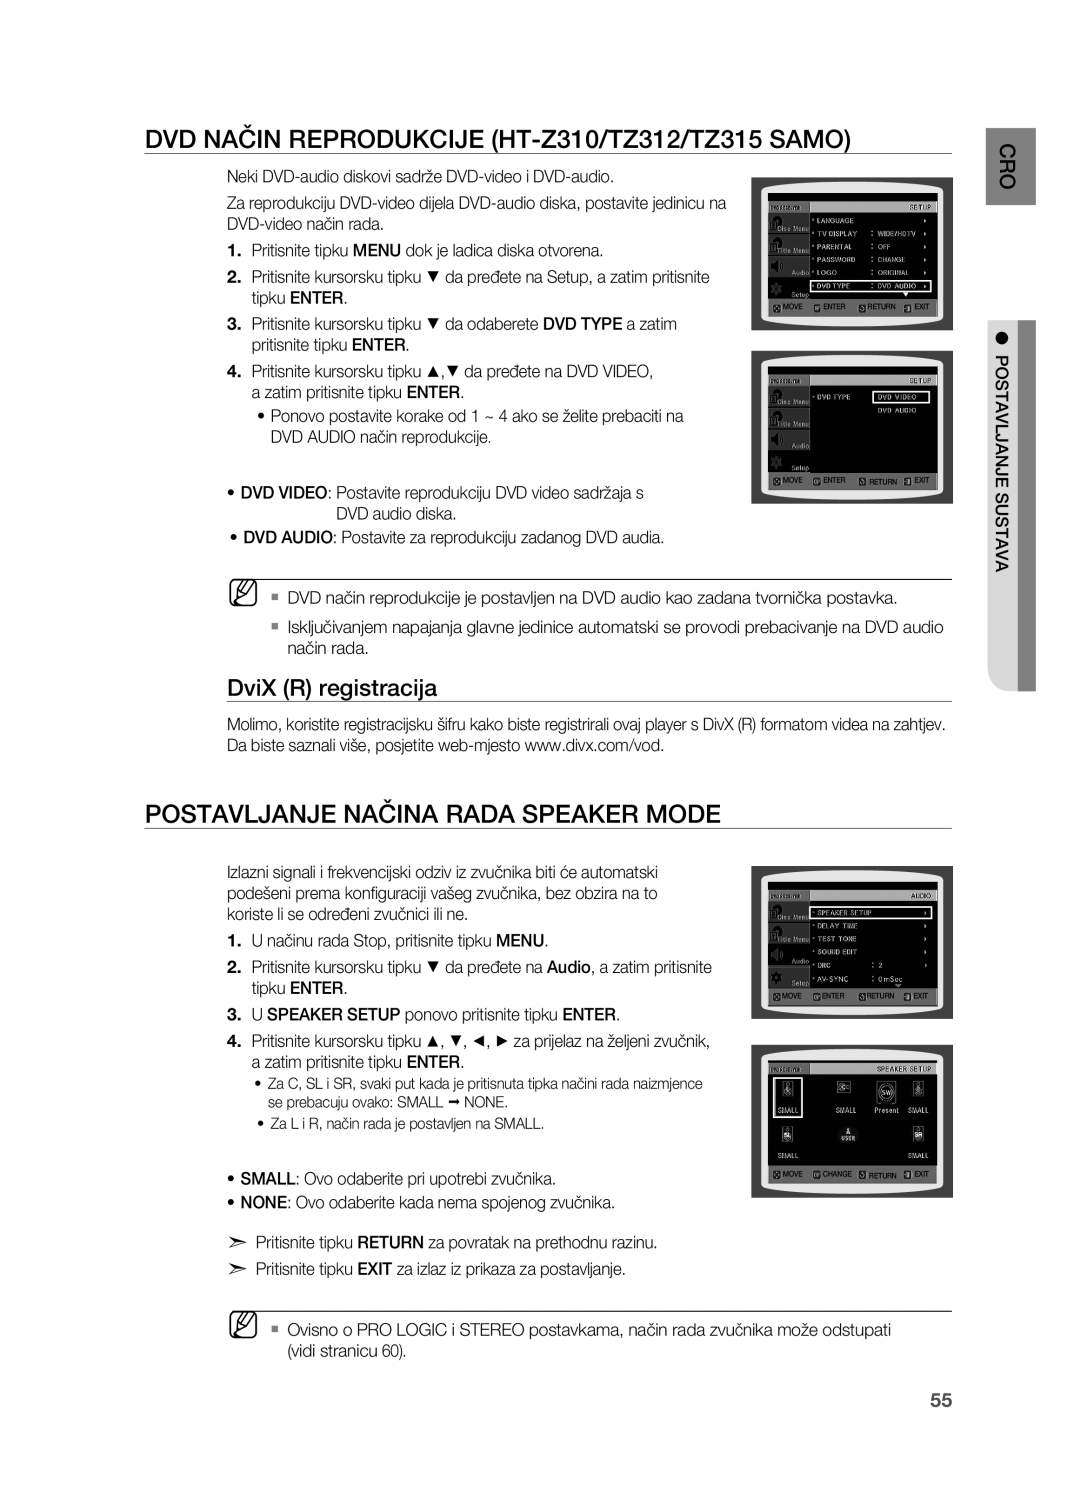 Samsung HT-Z310R/EDC manual DVD način reprodukcije HT-Z310/TZ312/TZ315 samo, Postavljanje načina rada SPEAKER MODE, O Cr 